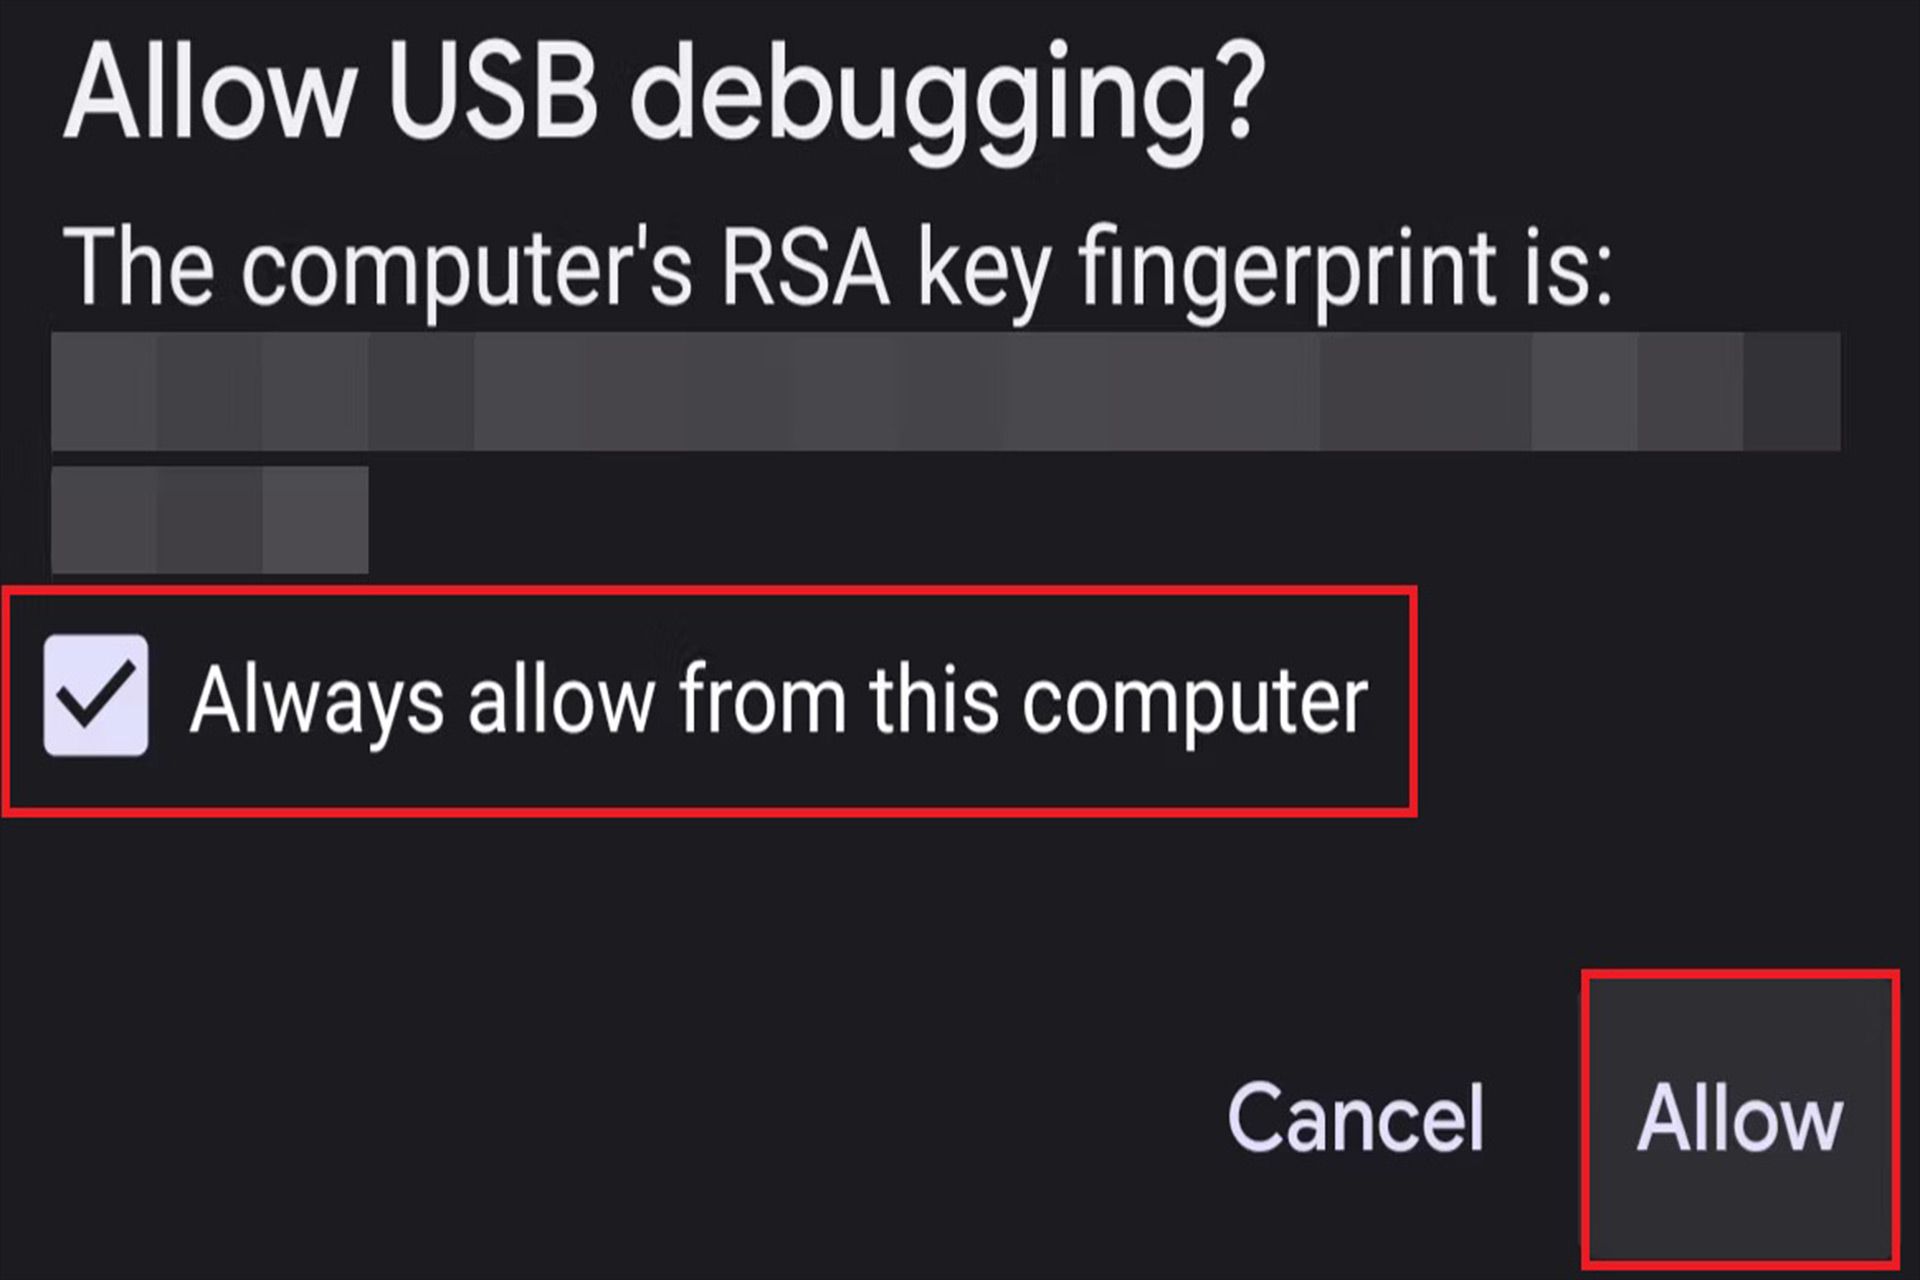 تایید شناسه کامپیوتر در دستگاه اندرویدی در بخش USB debugging